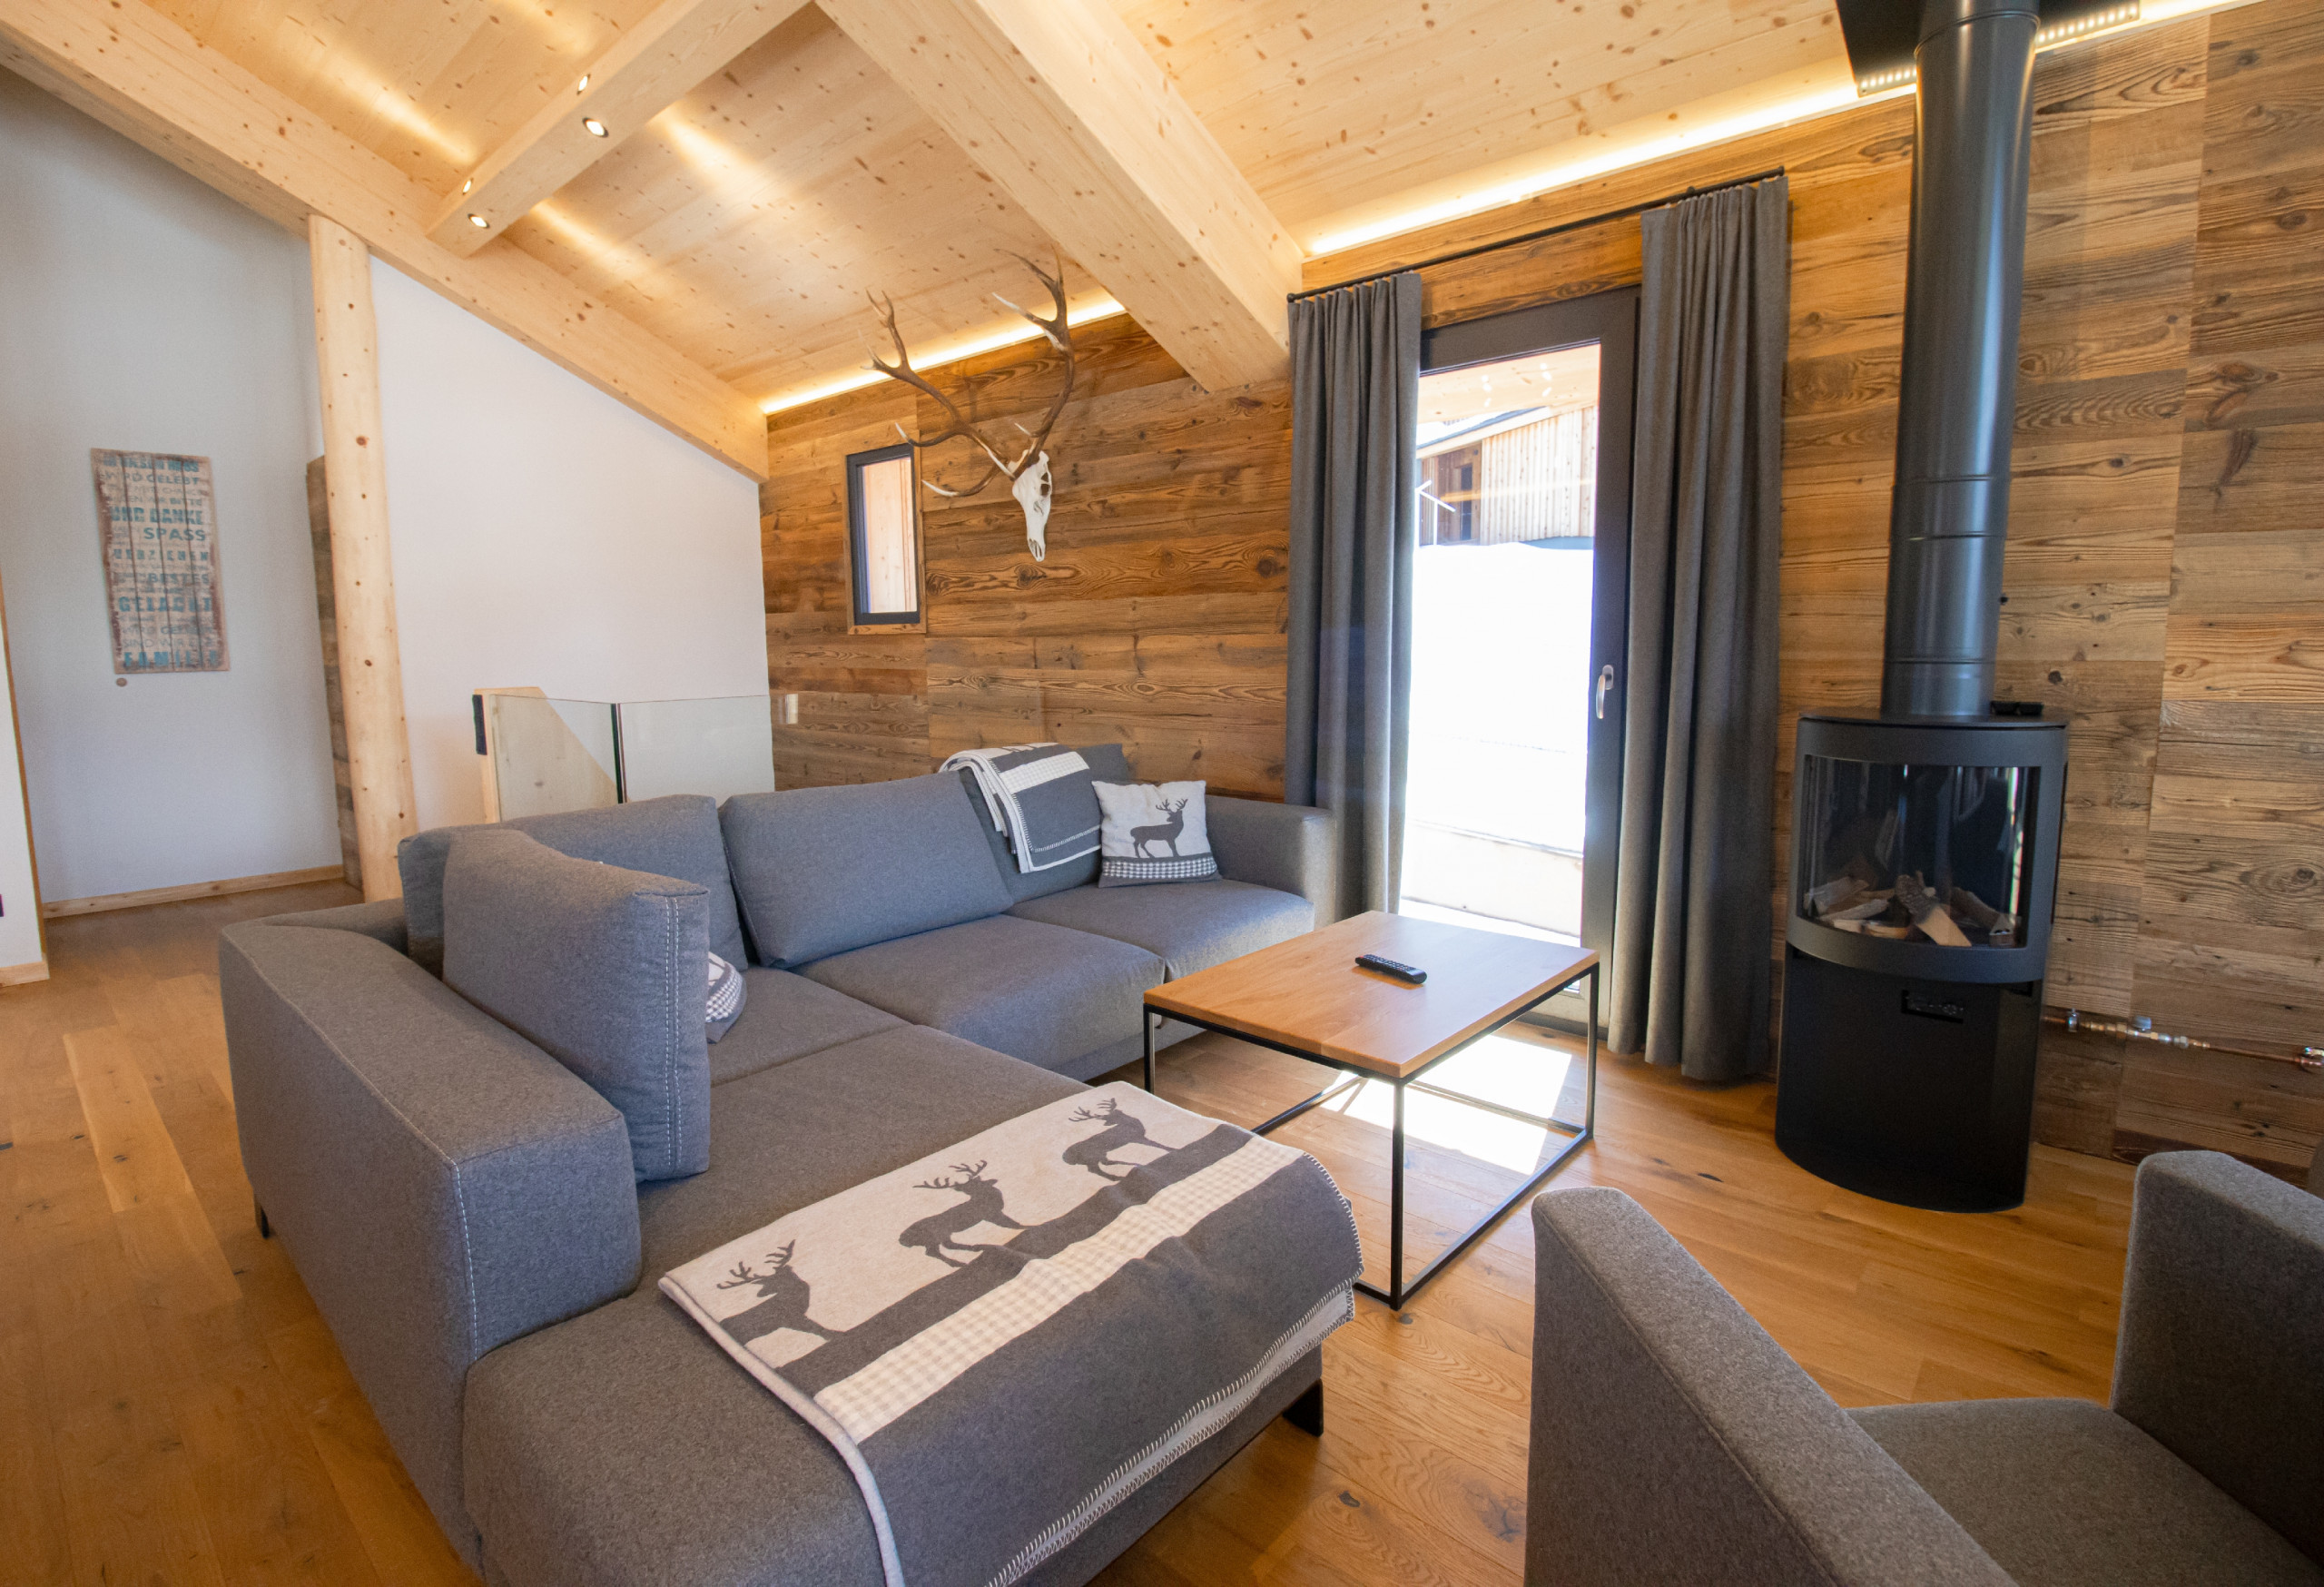  in Haus im Ennstal - Premium Ferienhaus mit 3 Schlafzimmern, Sauna & Außenbadewanne